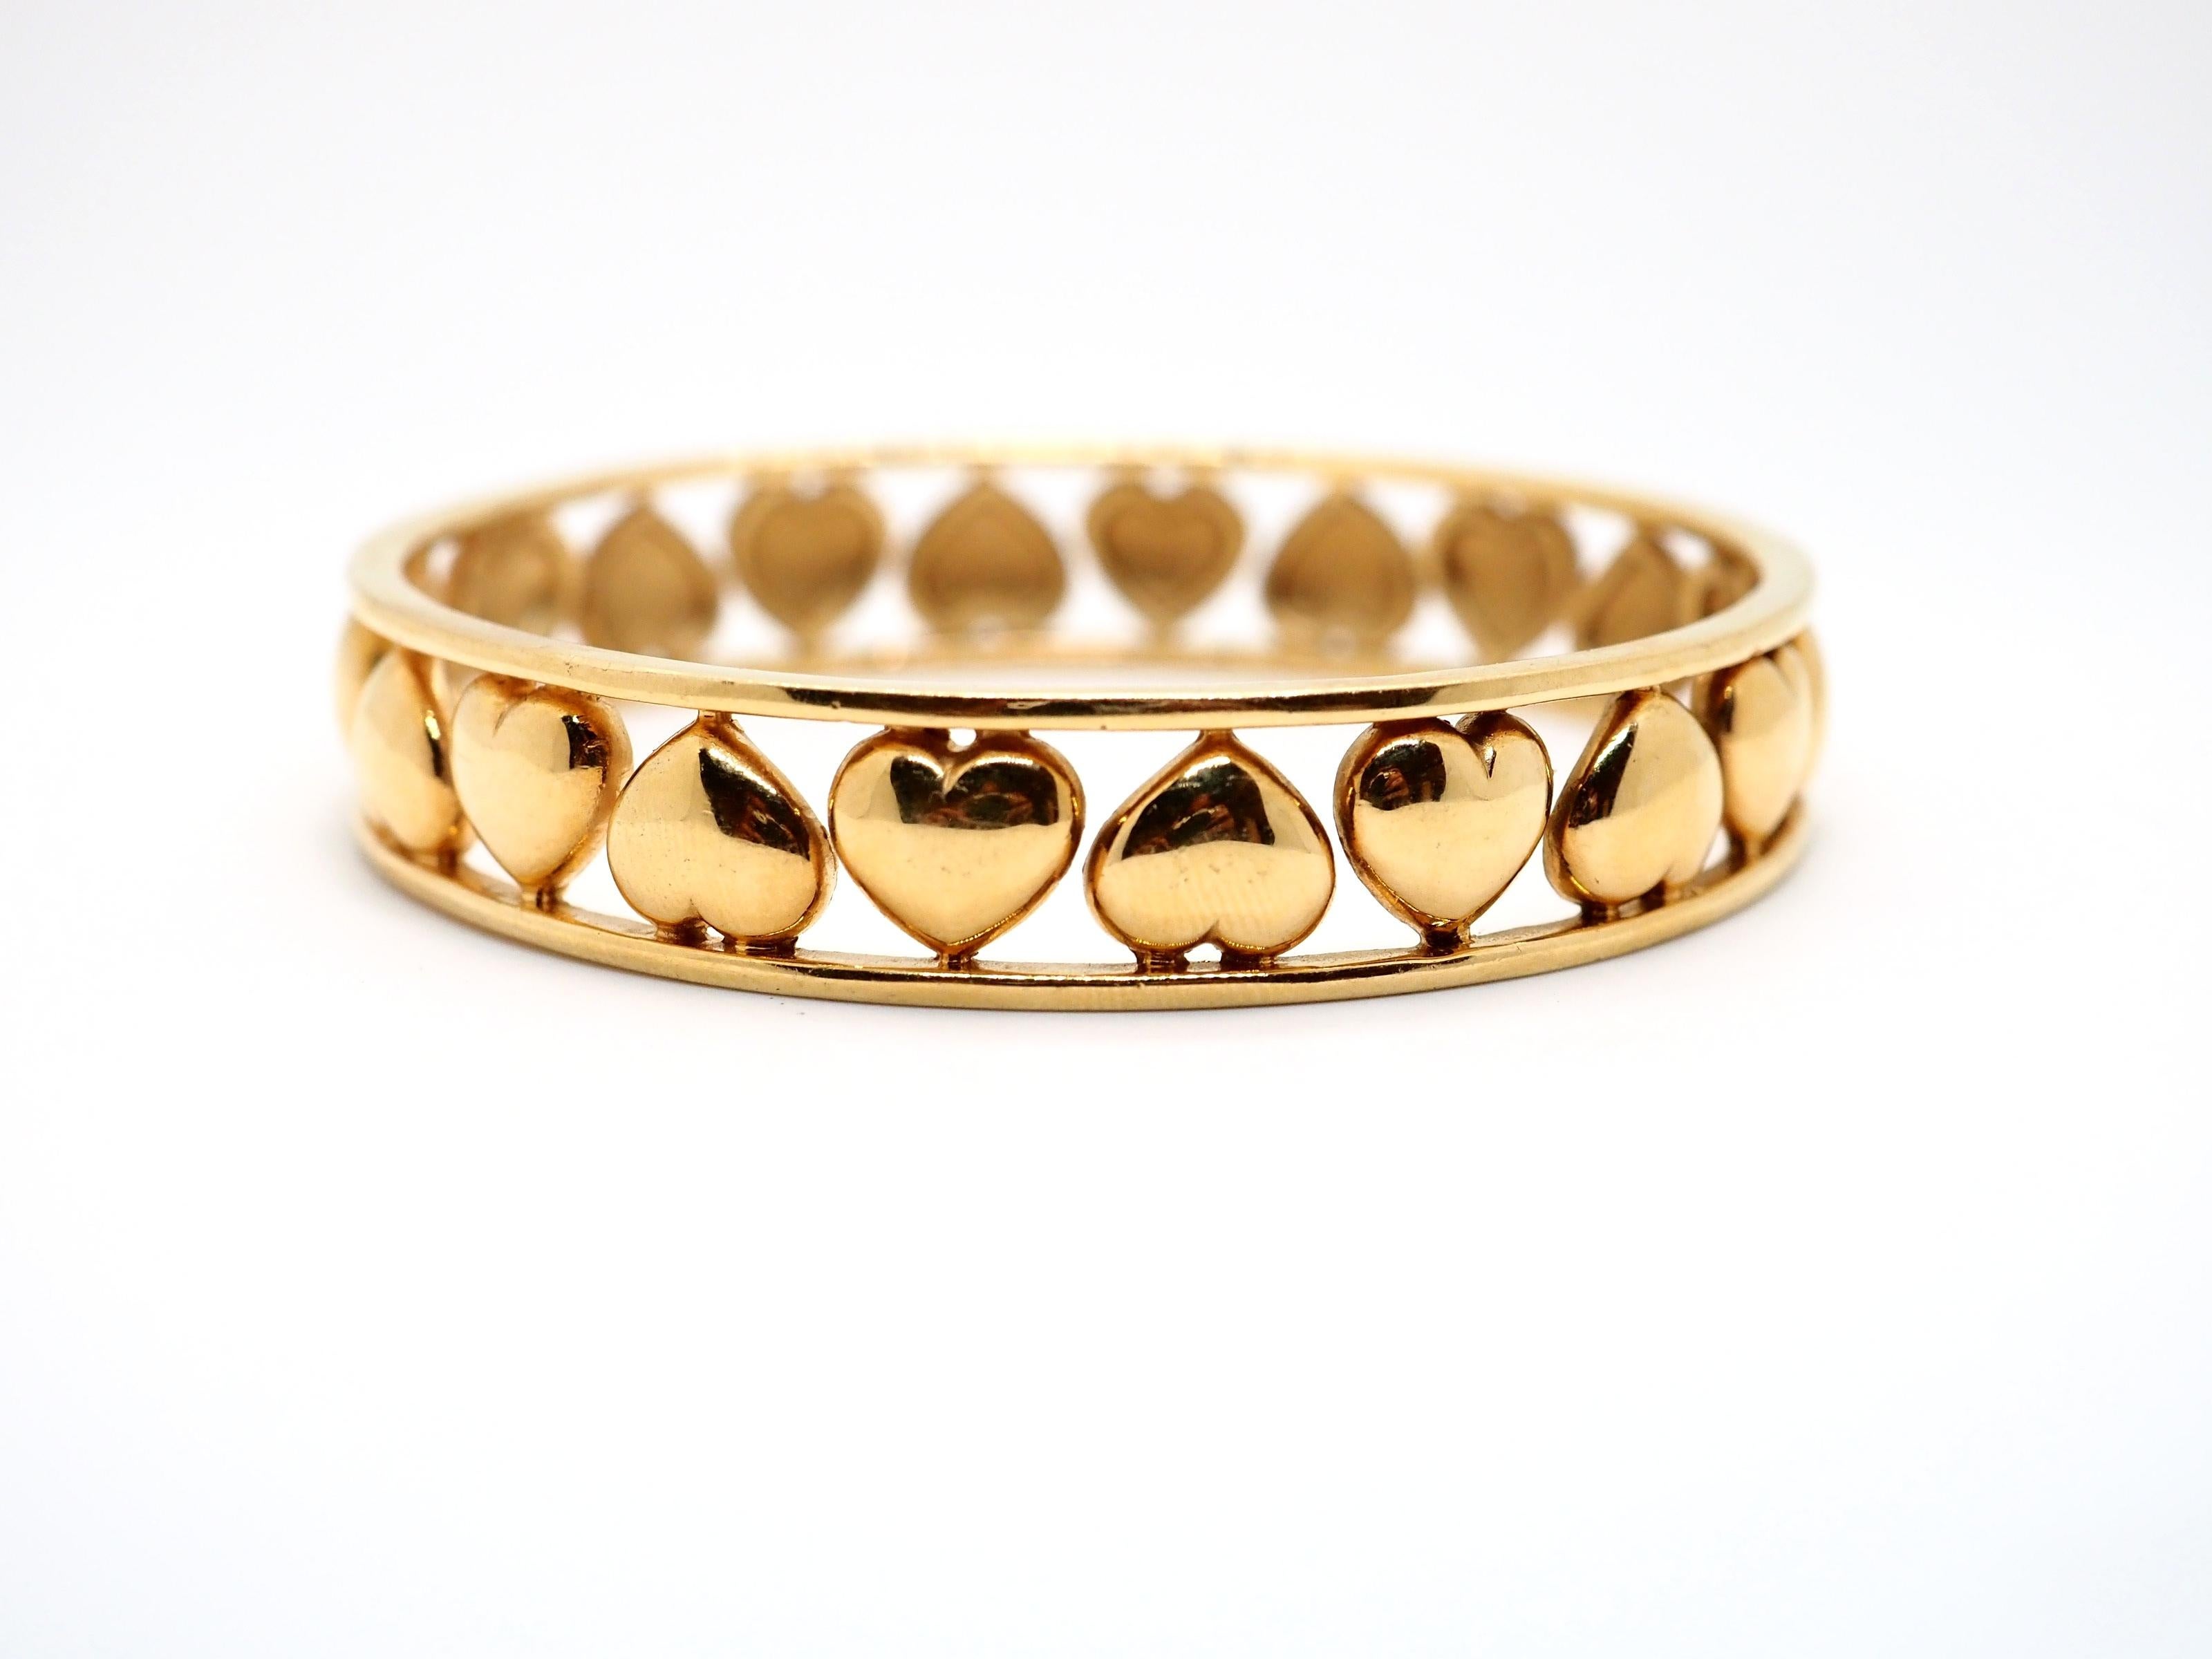 Belle parure Jahan composée d'un bracelet et d'une bague en or jaune 18 carats décorés d'un ornement de cœurs. Les deux objets portent une marque Jahan Geneve, 750 et Swiss Made  coups de poing.  

L'histoire de la maison de joaillerie Jahan s'étend